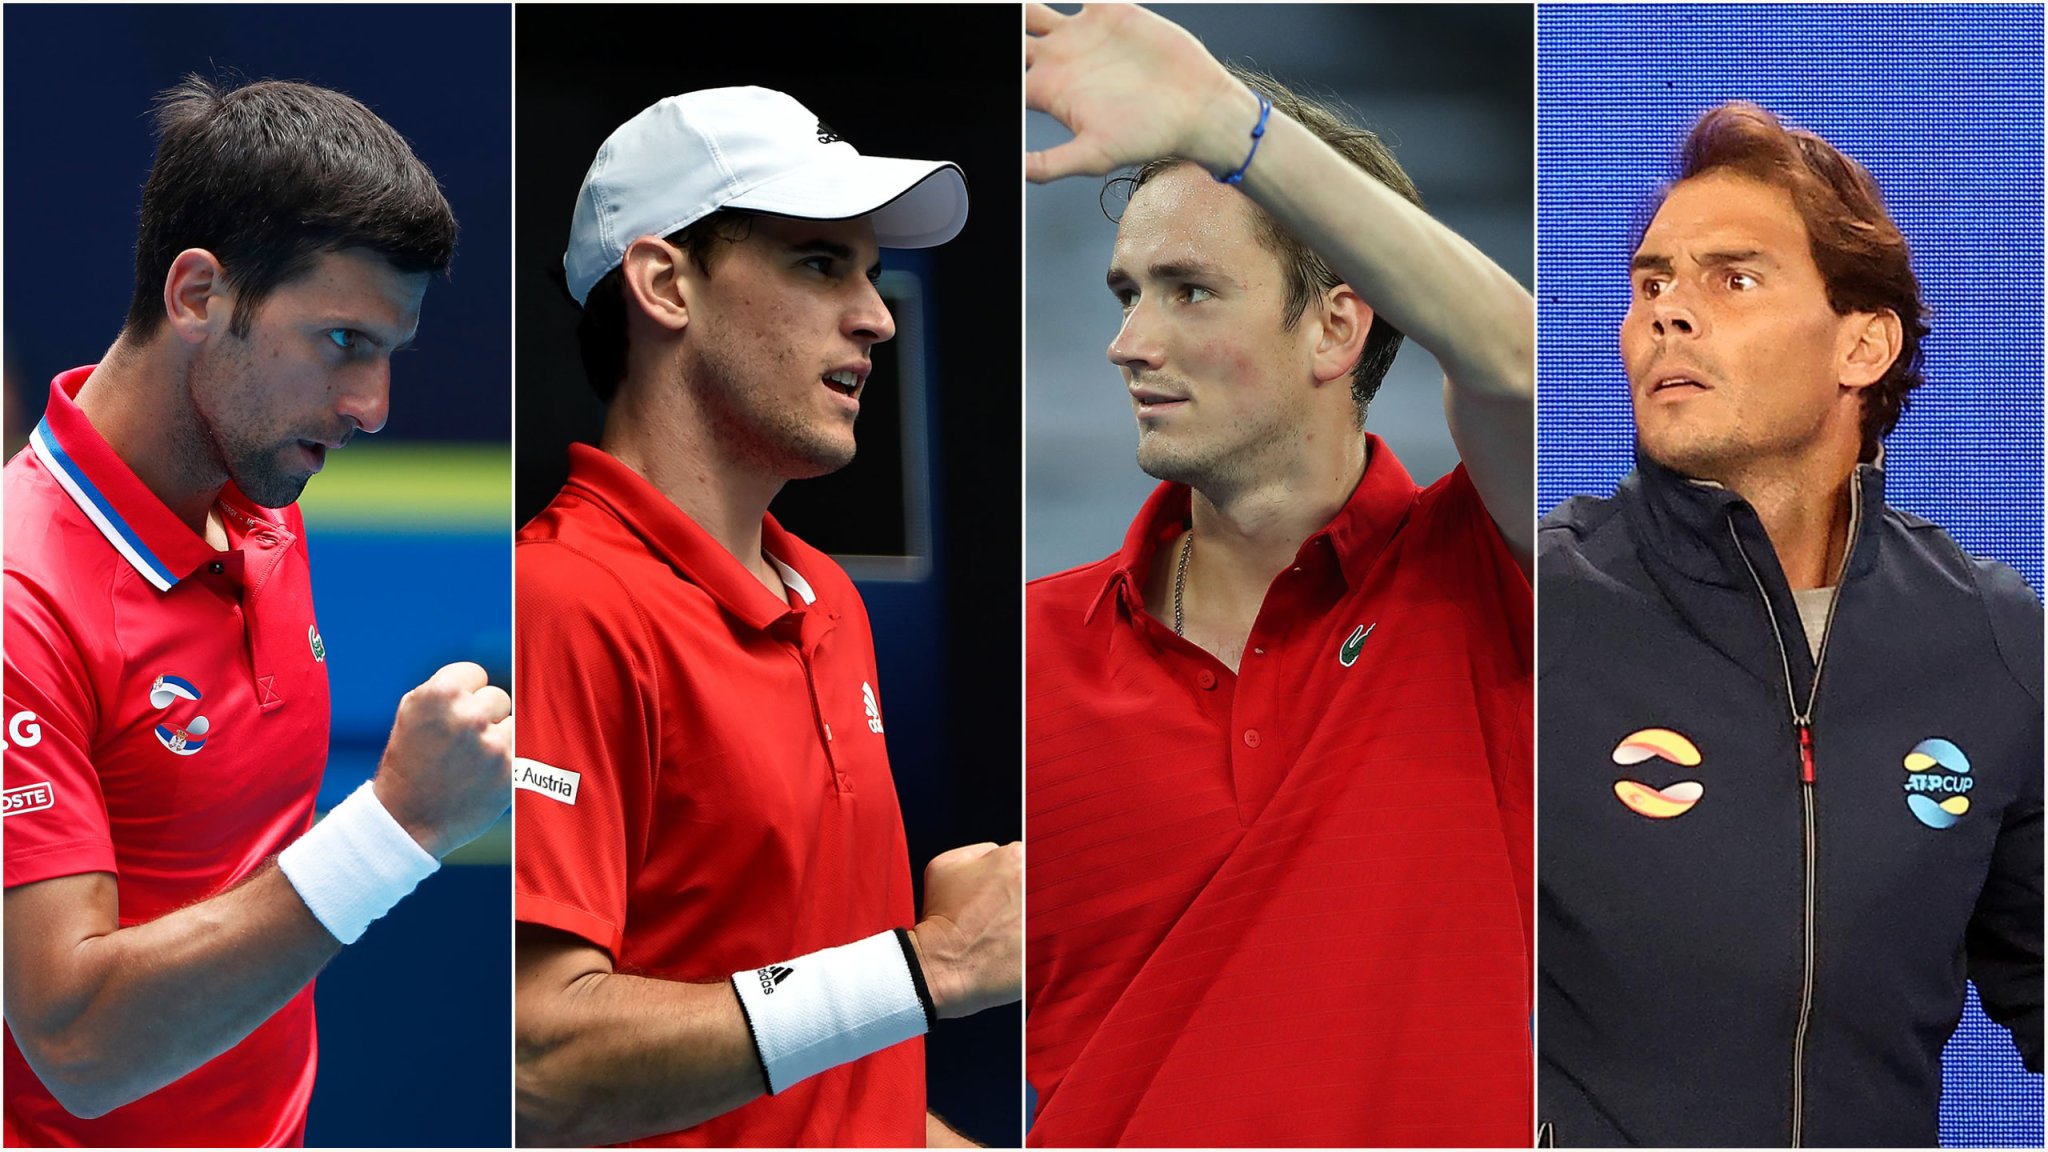 Australian Open men's preview: Is Djokovic the overwhelming favorite?